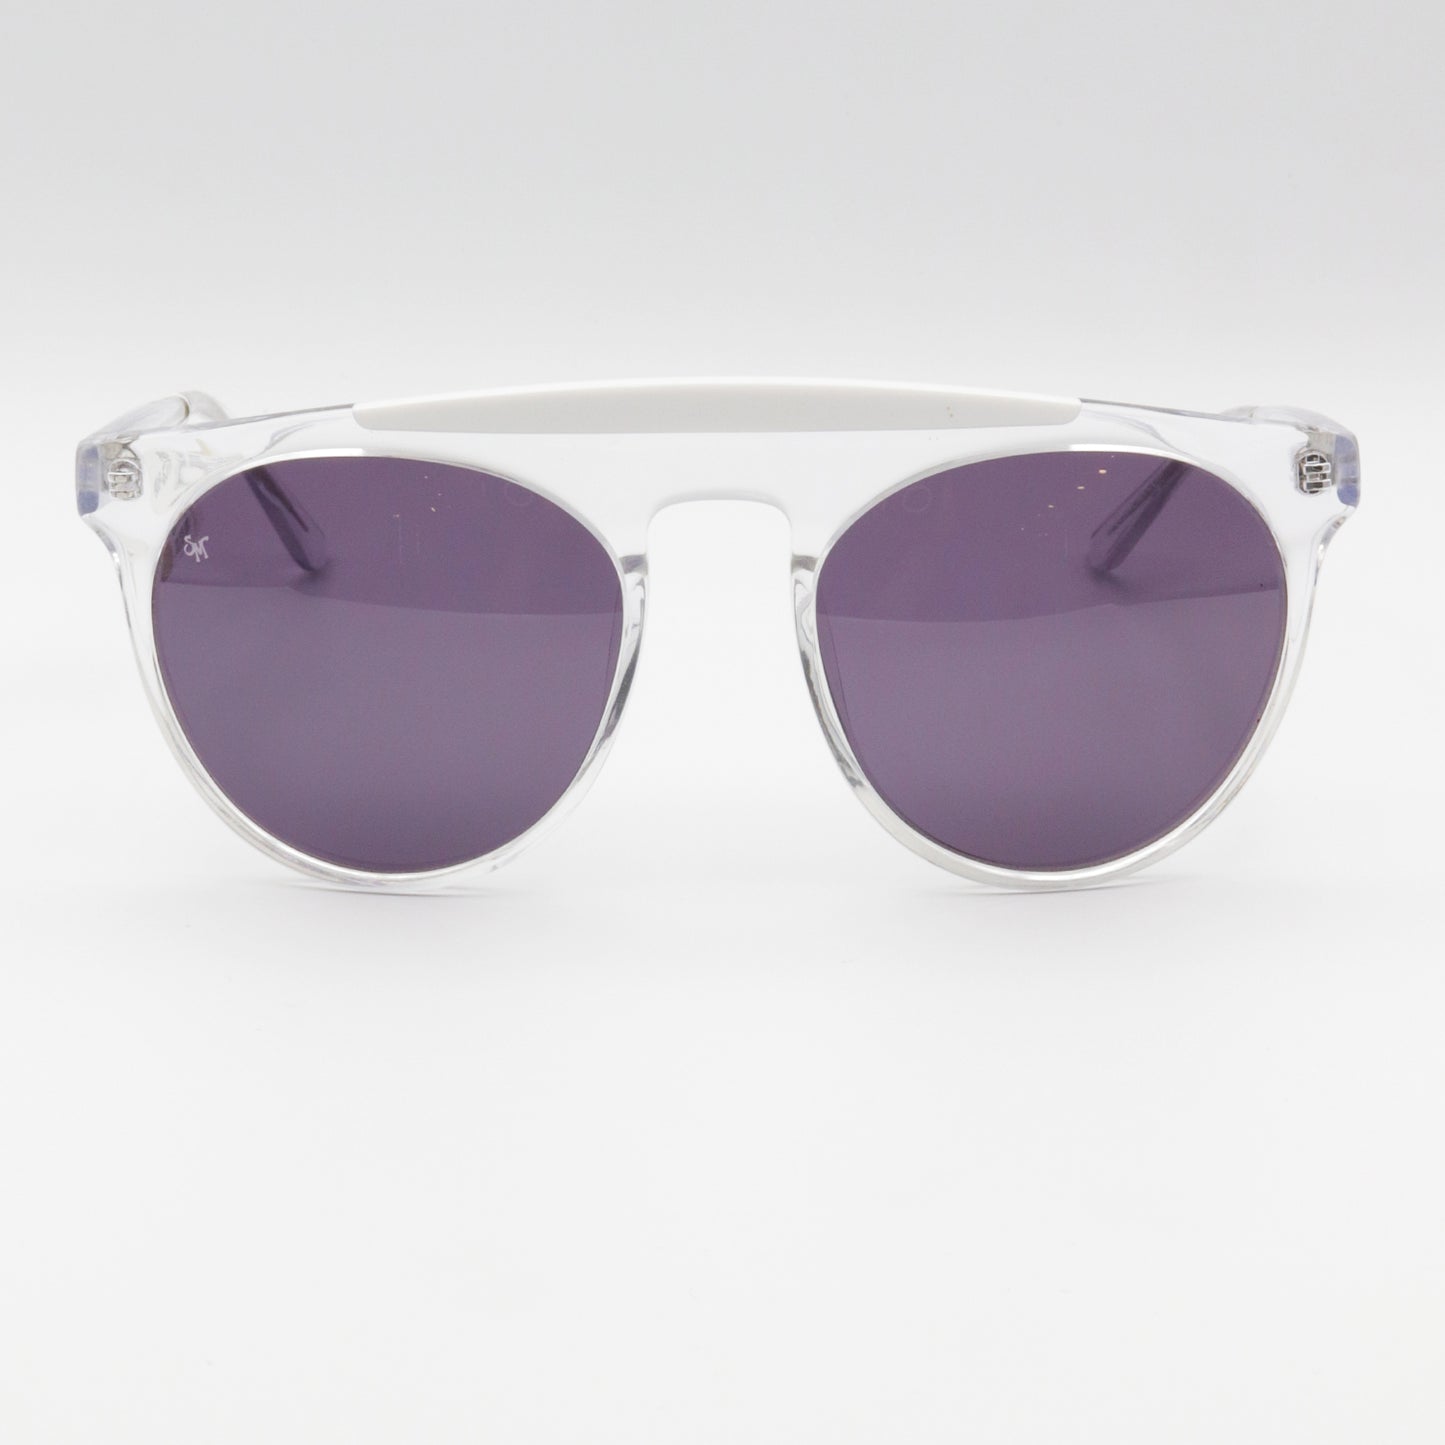 Atomic Smoke x Mirrors Sunglasses